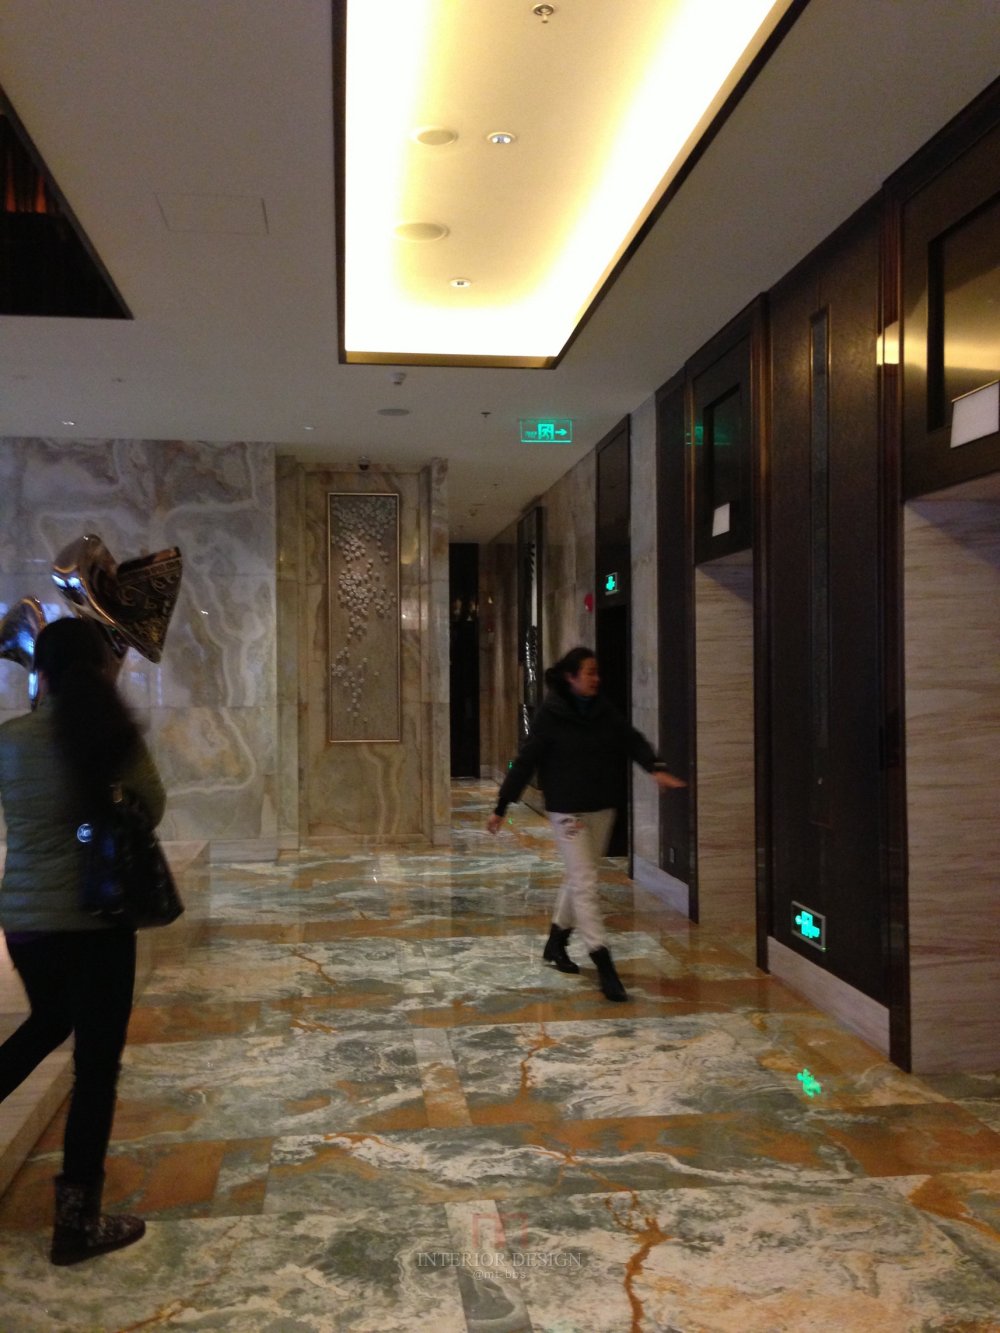 成都丽思卡尔顿酒店The Ritz-Carlton Chengdu(欢迎更新,高分奖励)_IMG_6384.JPG